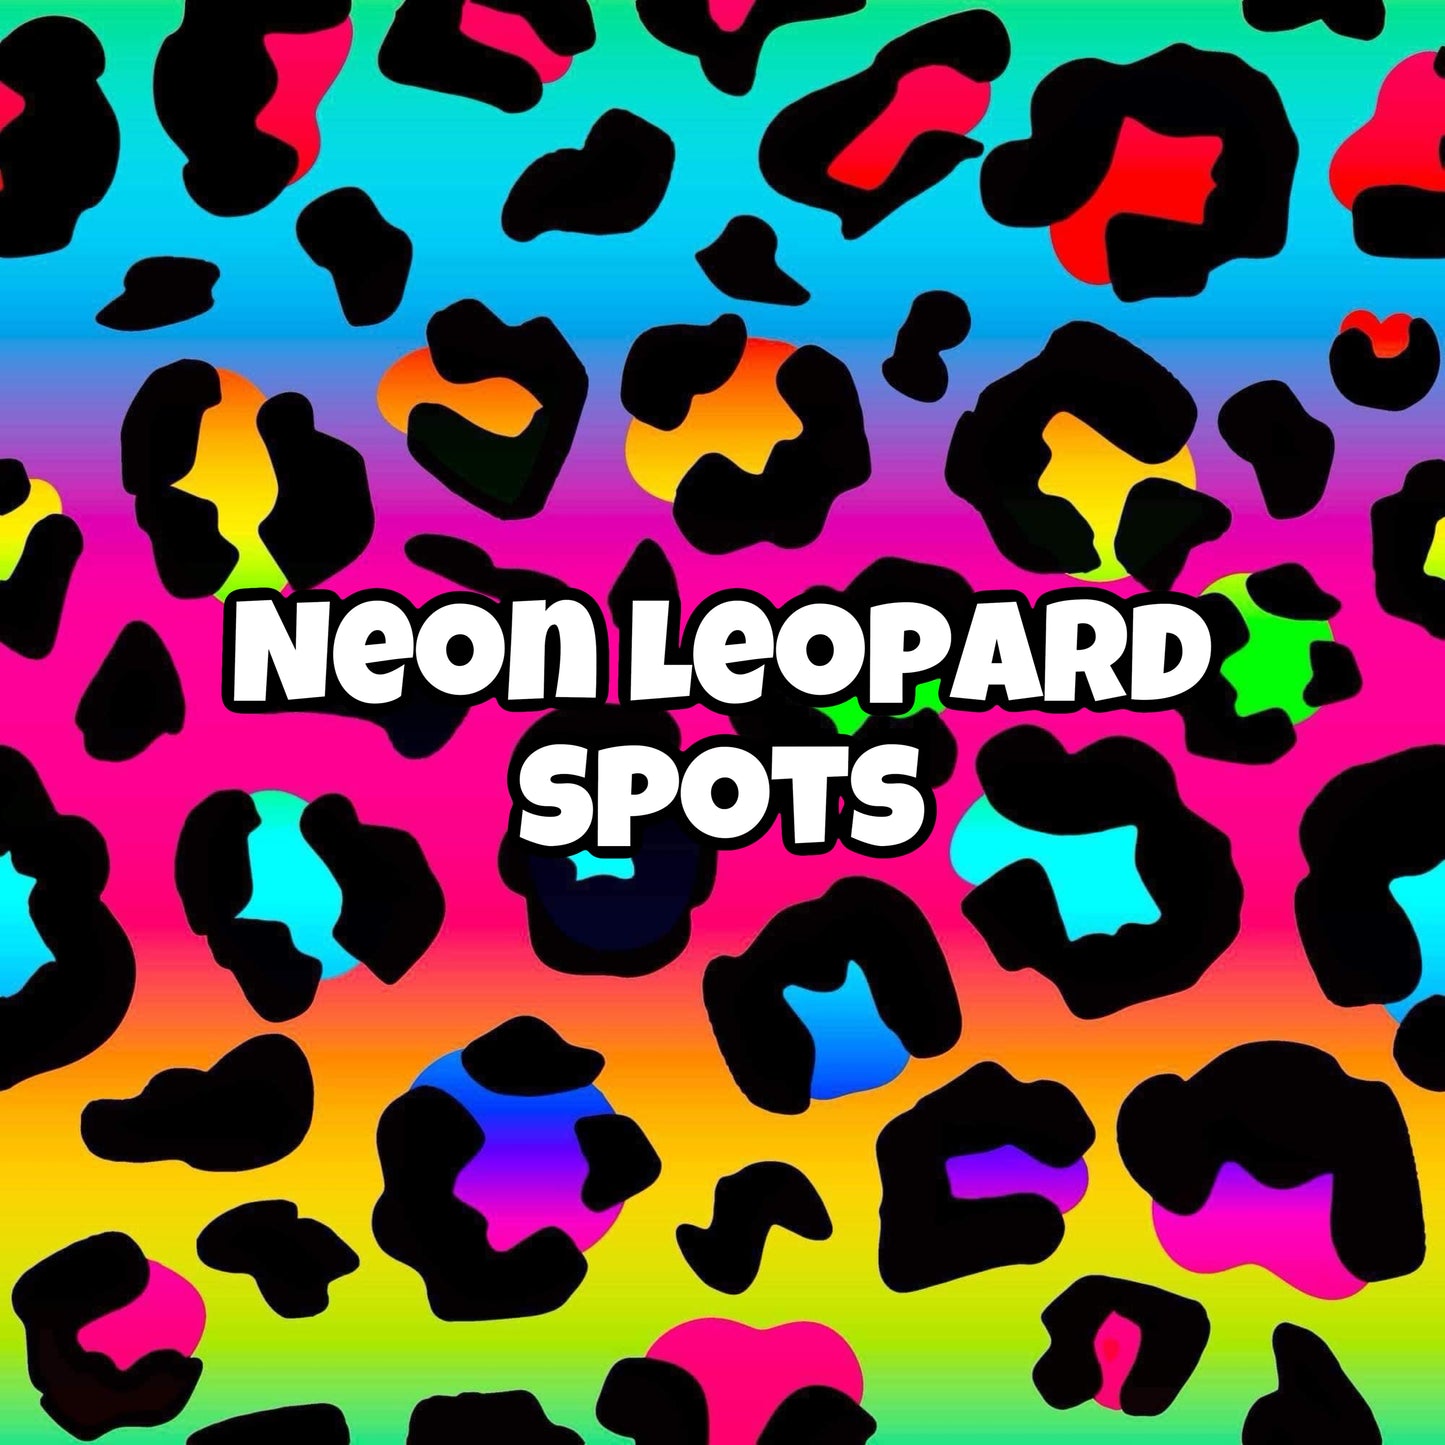 NEON LEOPARD SPOTS